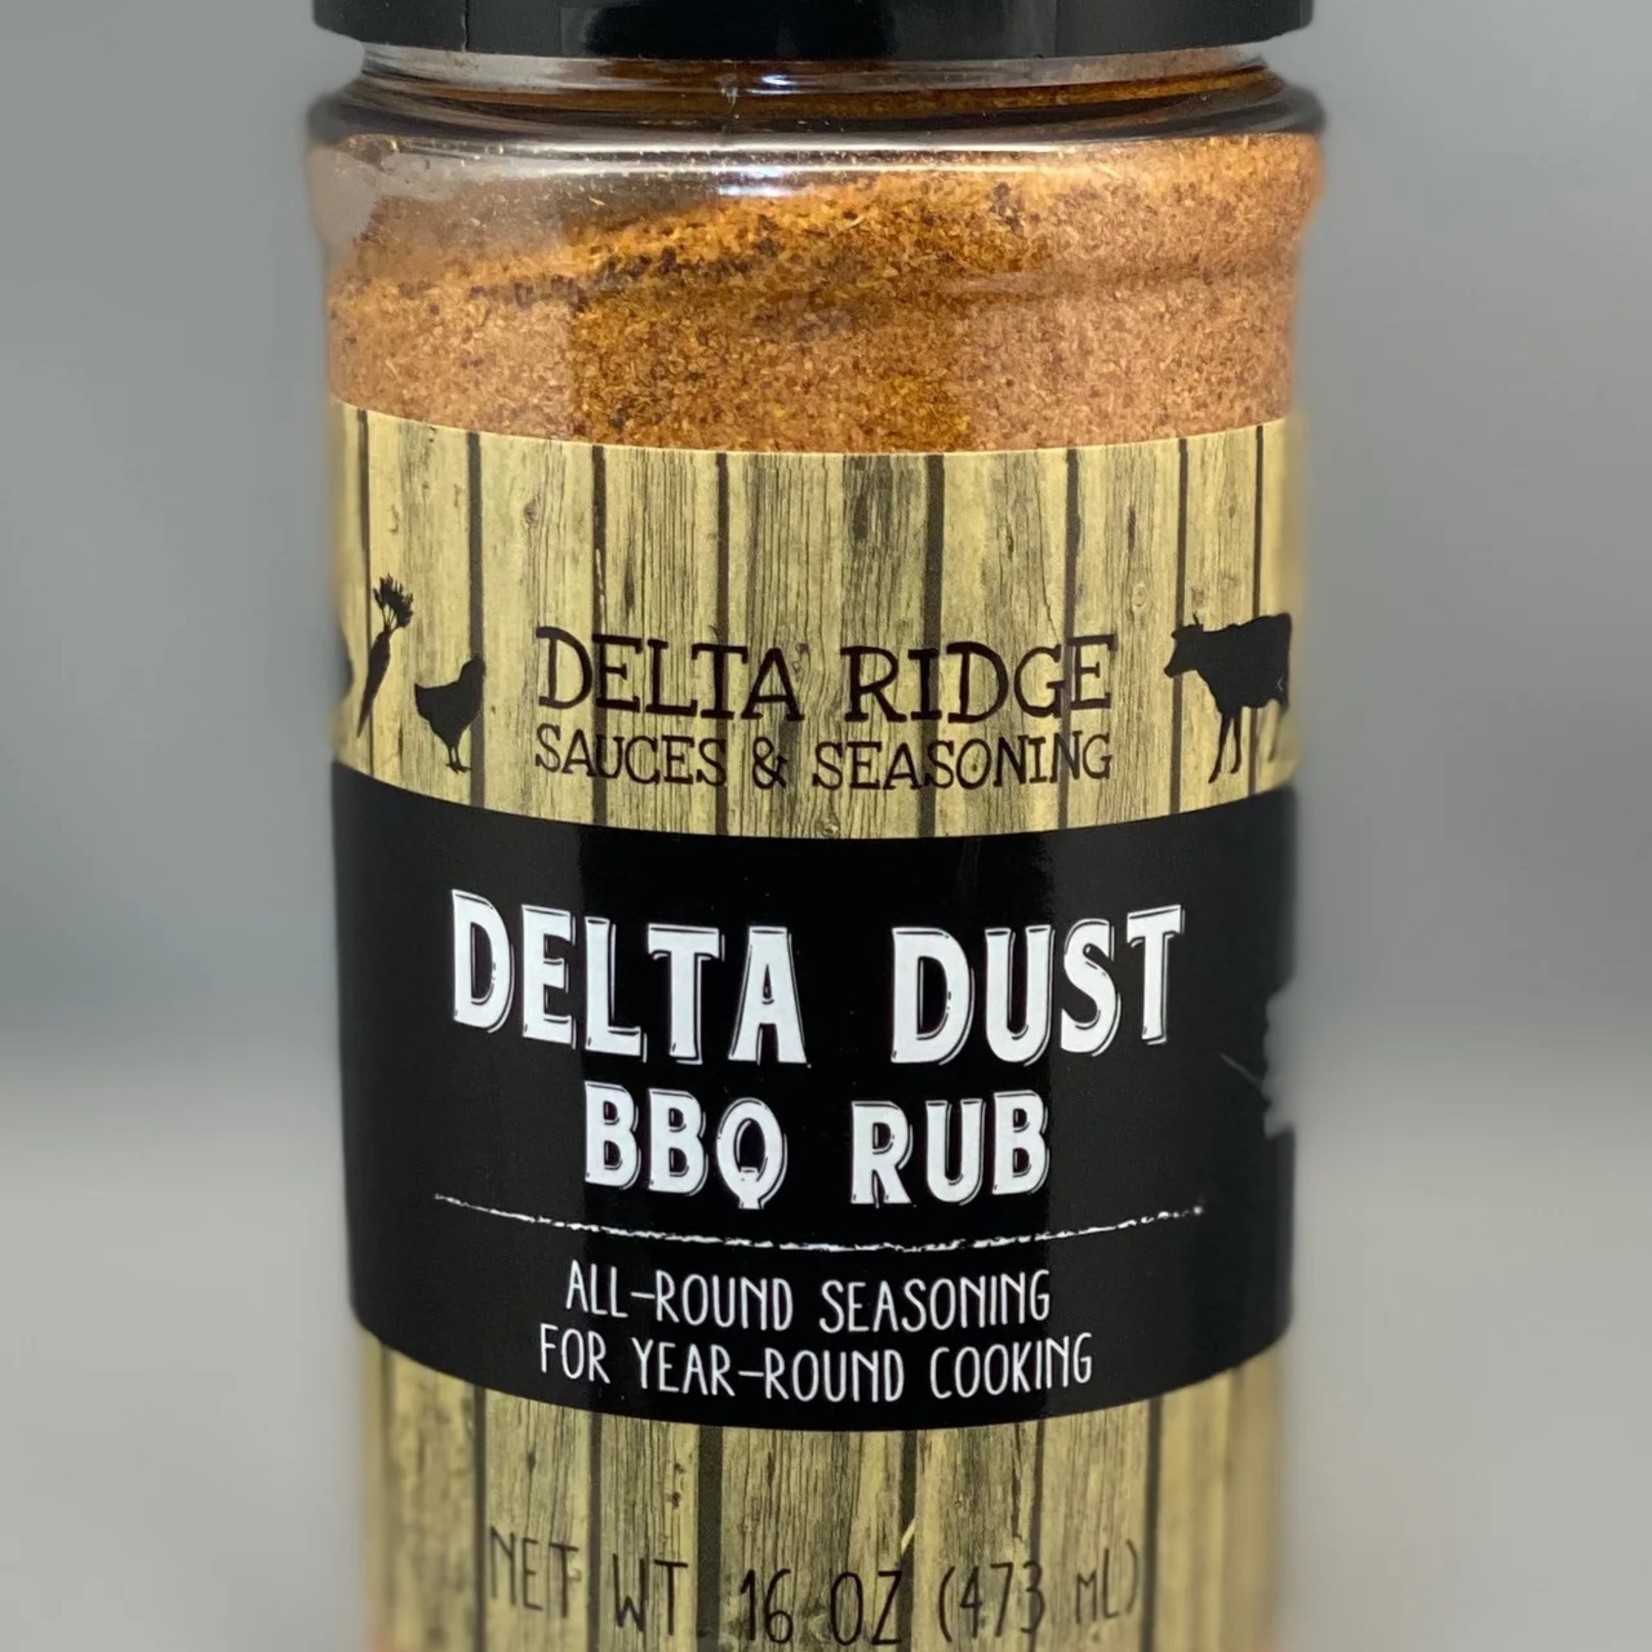 Delta Ridge Sauces & Seasonings Delta Ridge Seasoning